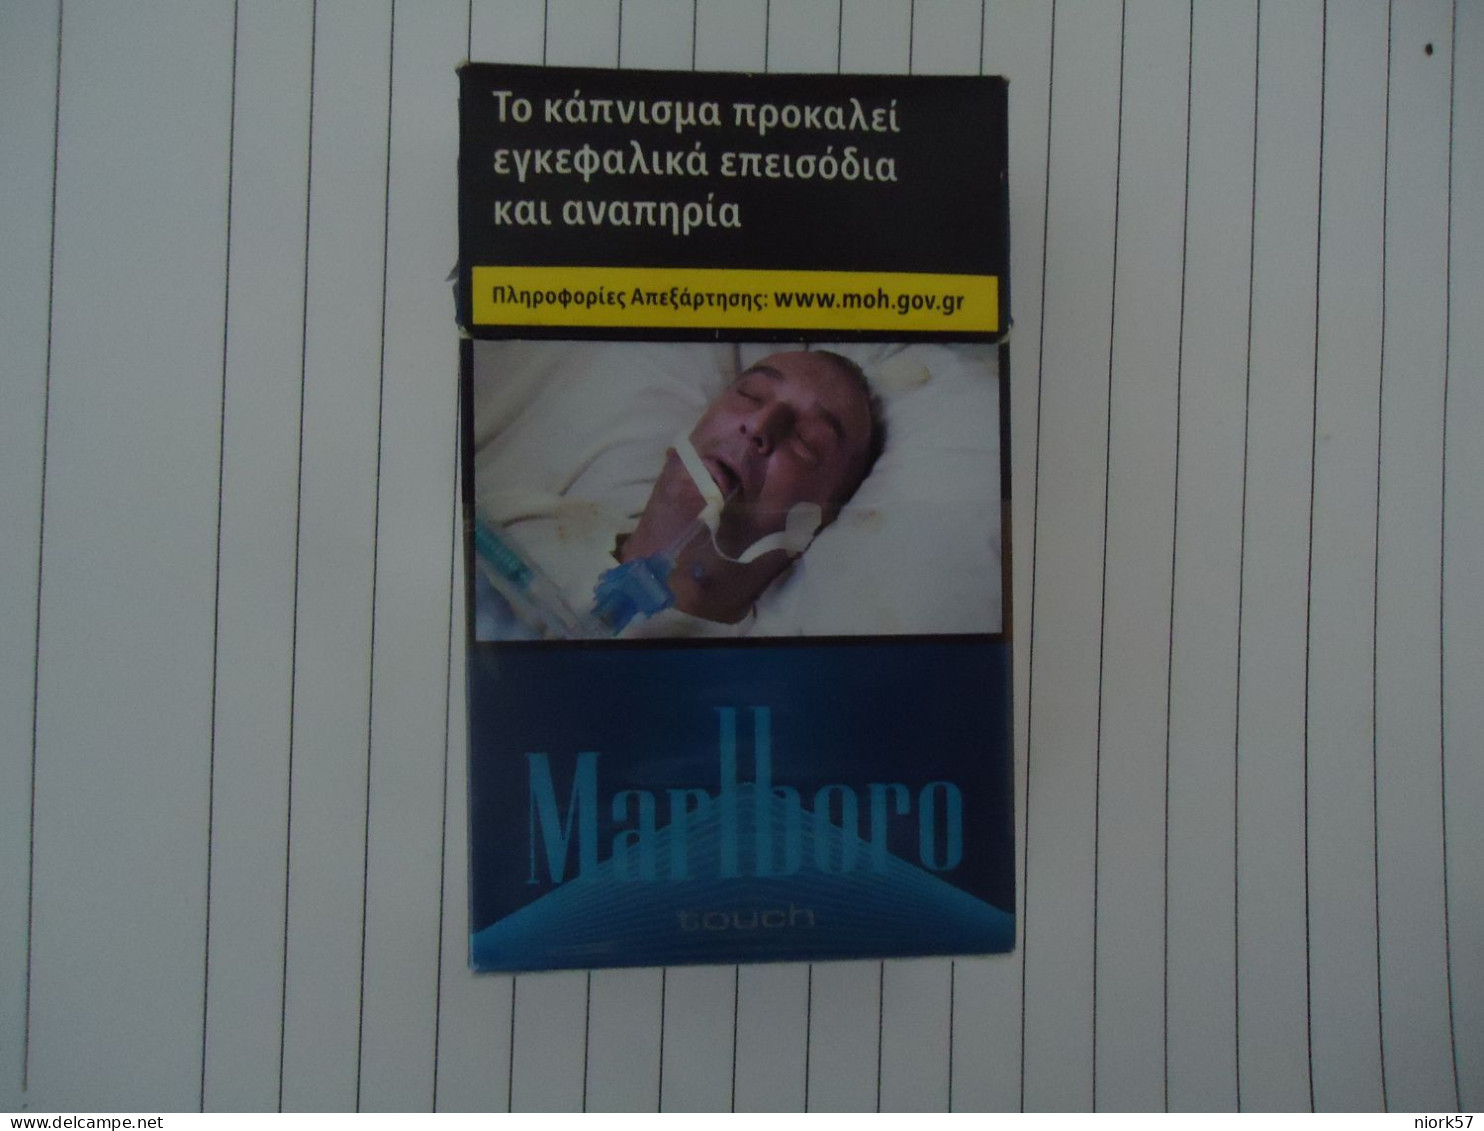 GREECE USED EMPTY CIGARETTES BOXES MARLLBORO - Empty Tobacco Boxes